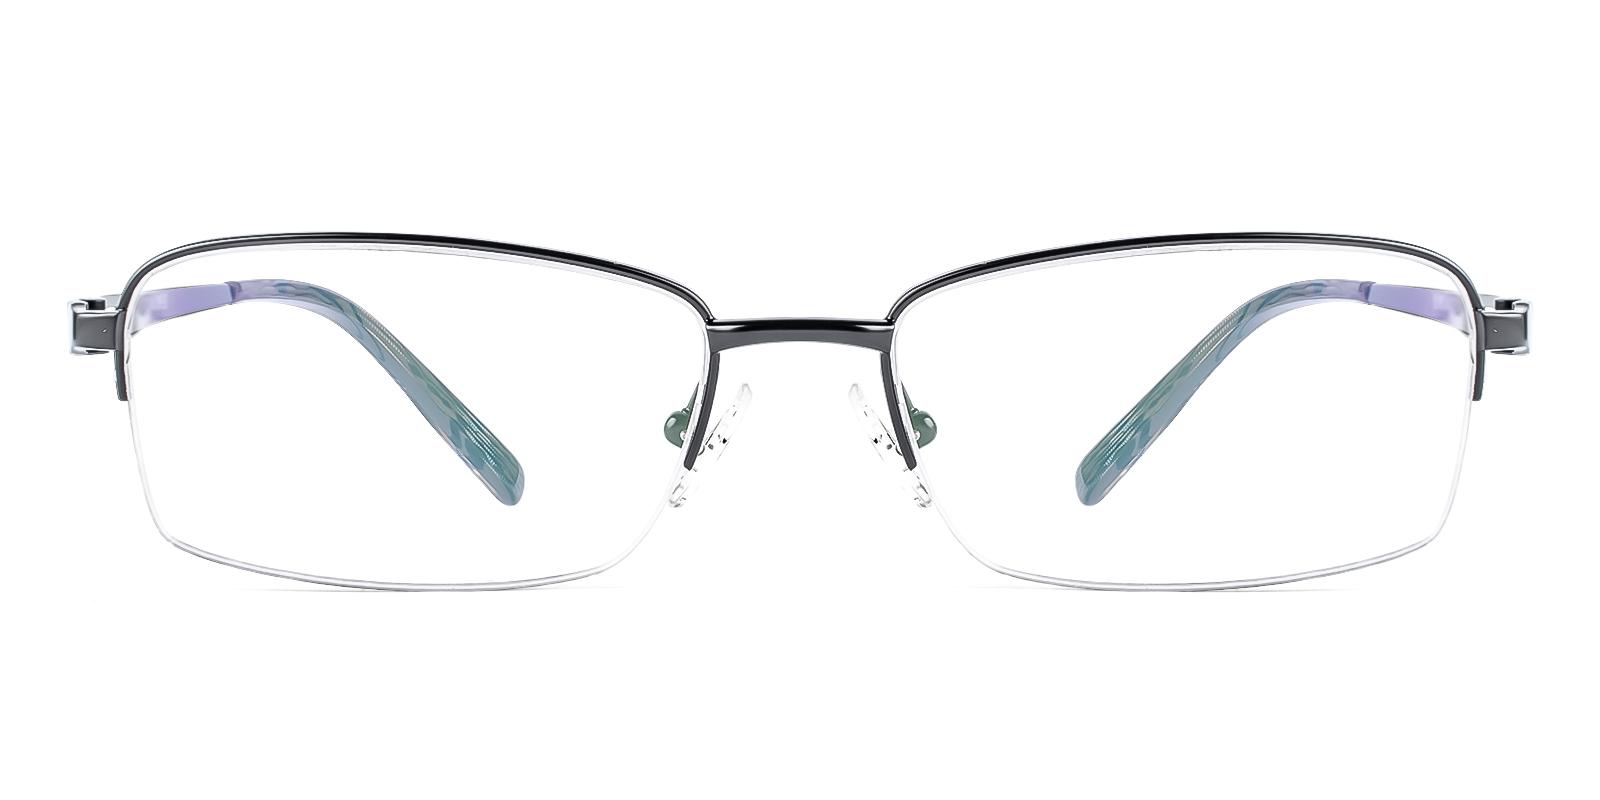 Quiteard Black Titanium Eyeglasses , NosePads Frames from ABBE Glasses